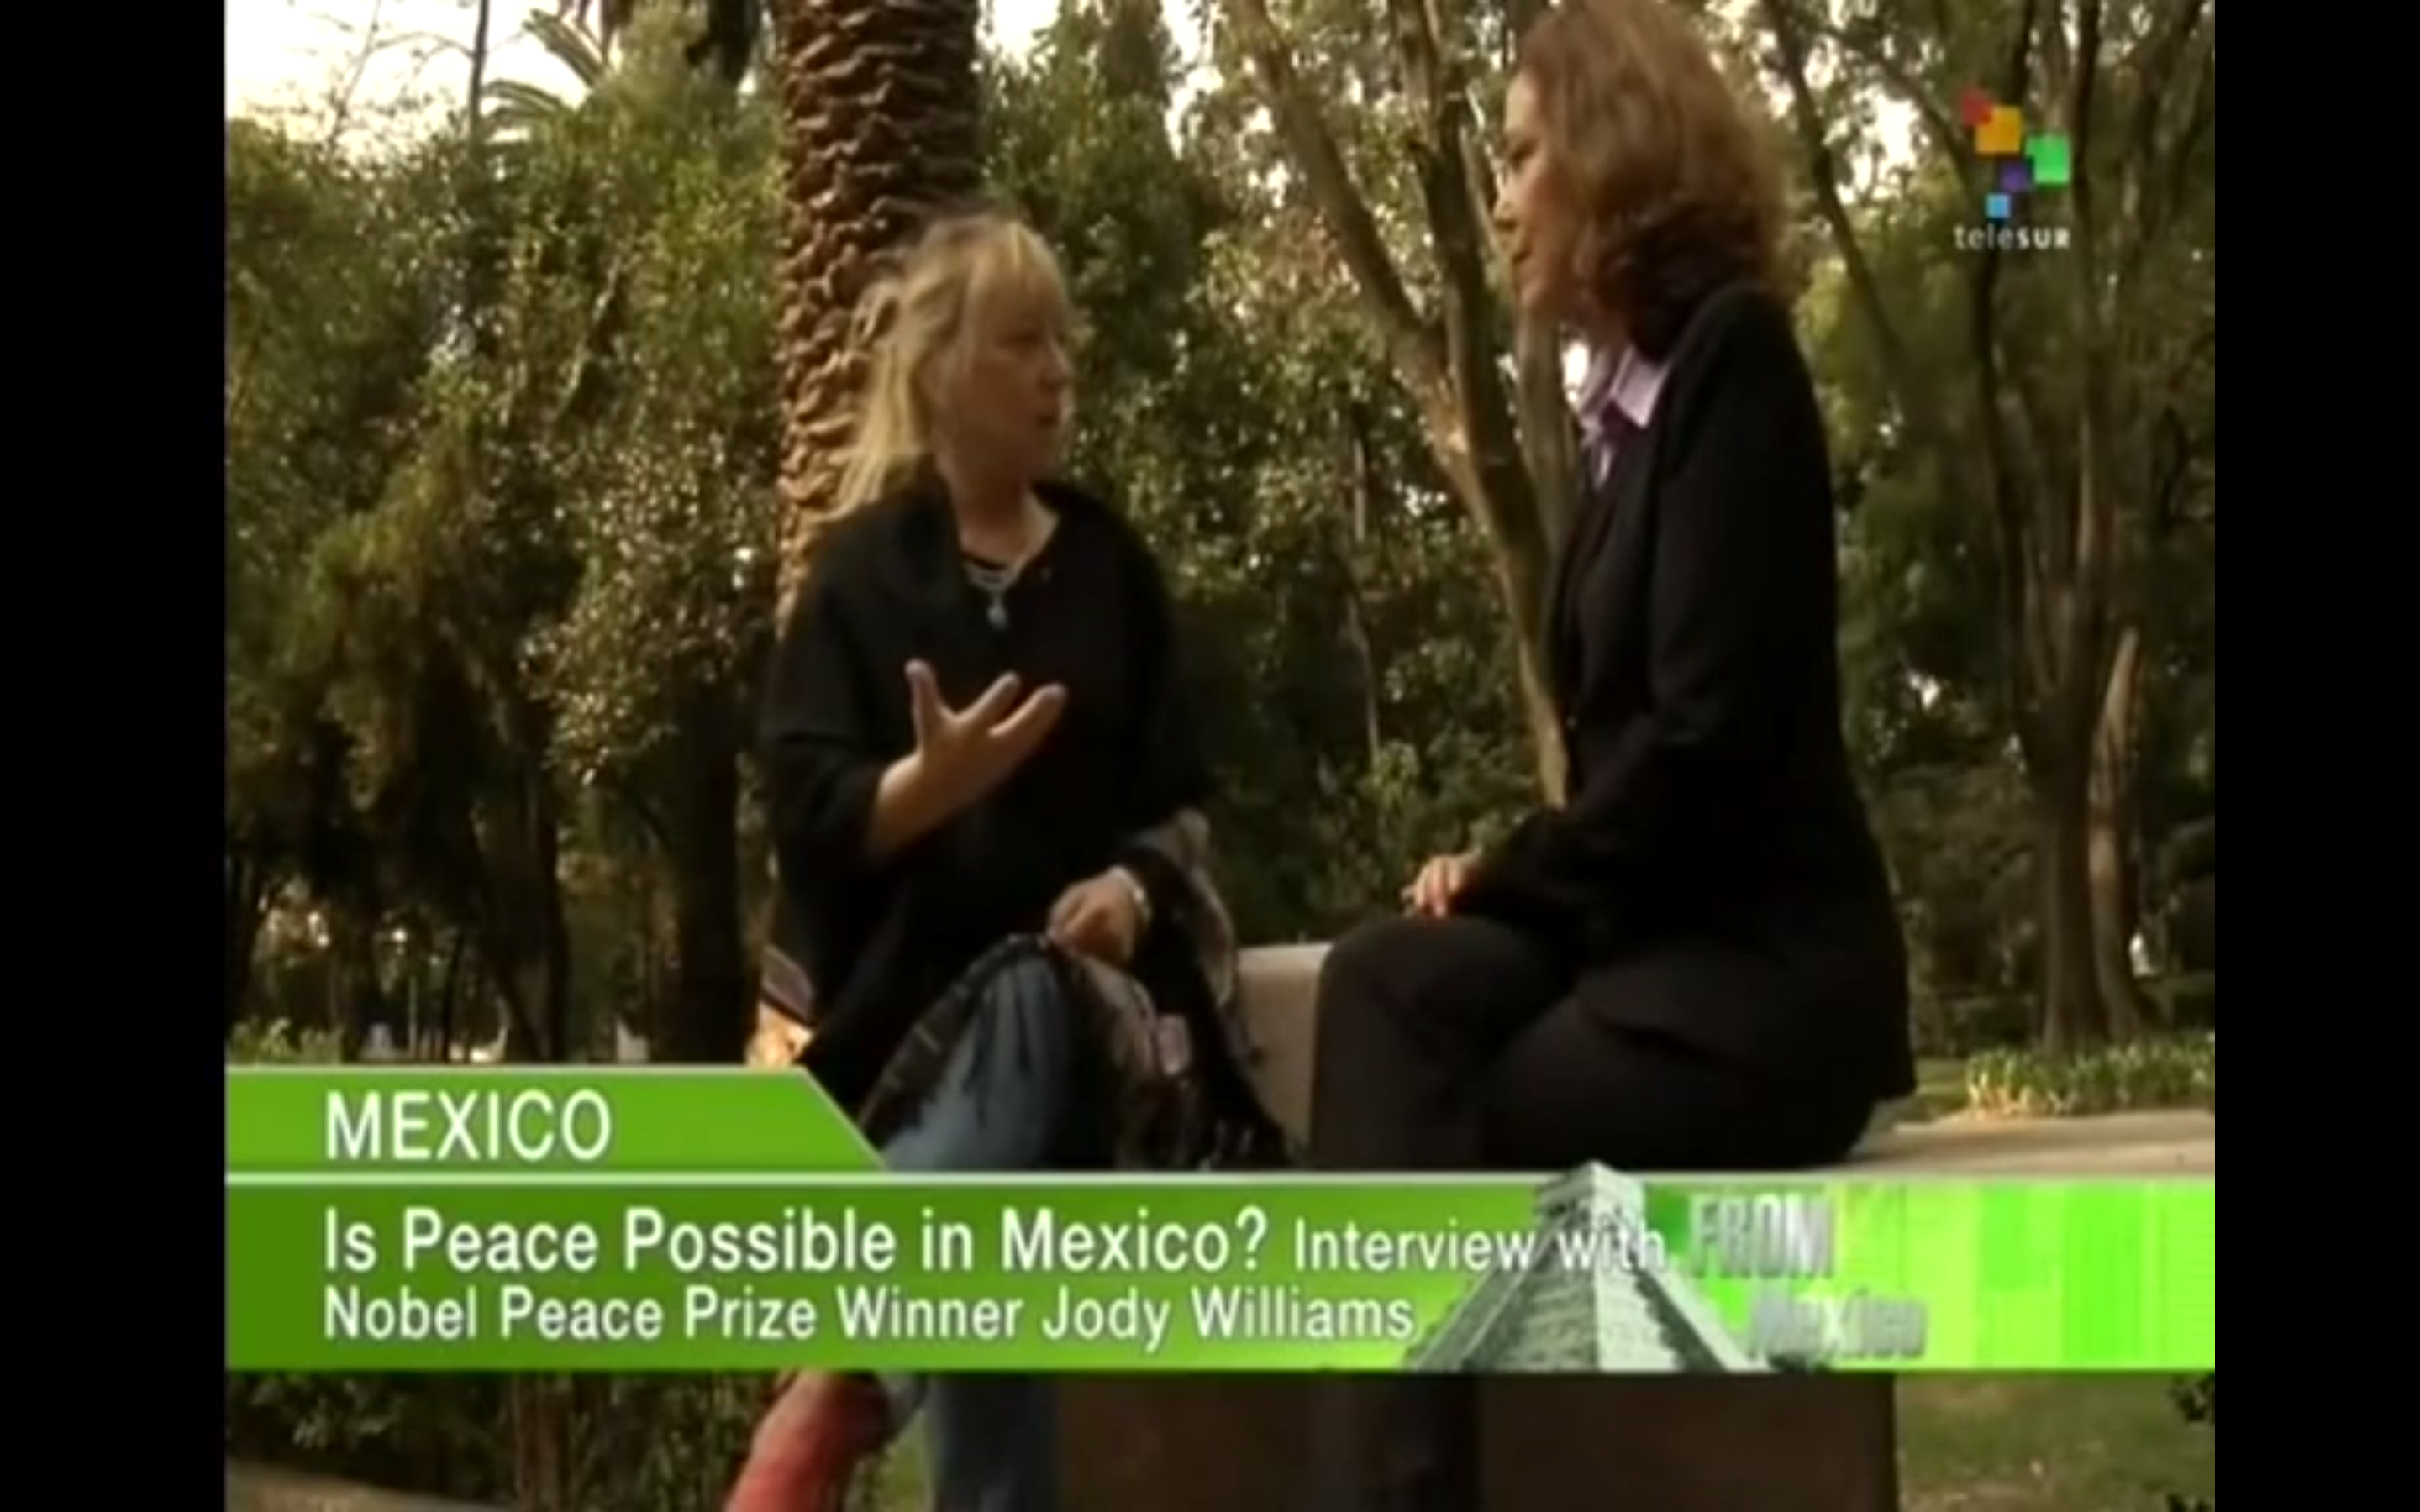 Nobel Peace Prize Winner Jody Williams Talks About Women’s Role in Peace